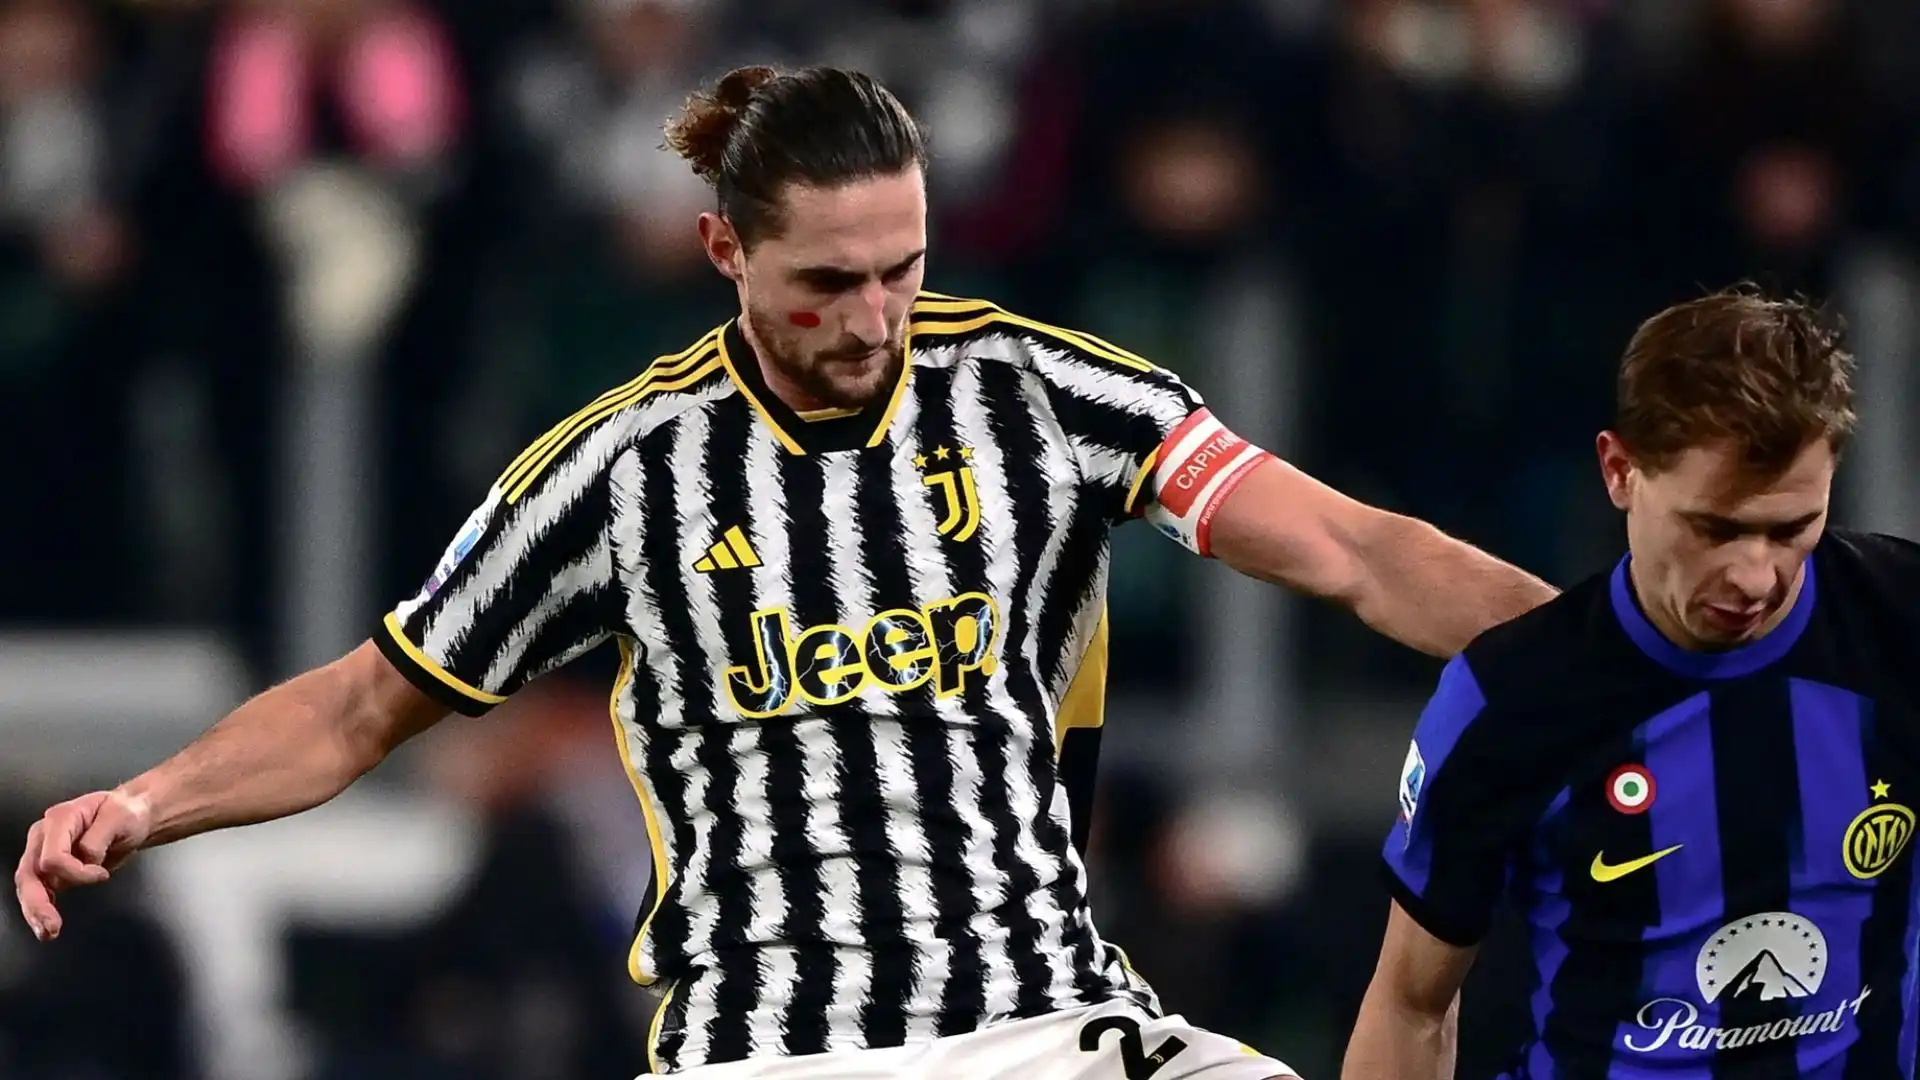 La trattativa con la Juventus è complessa, e l'Inter potrebbe approfittarne, secondo l'indiscrezione